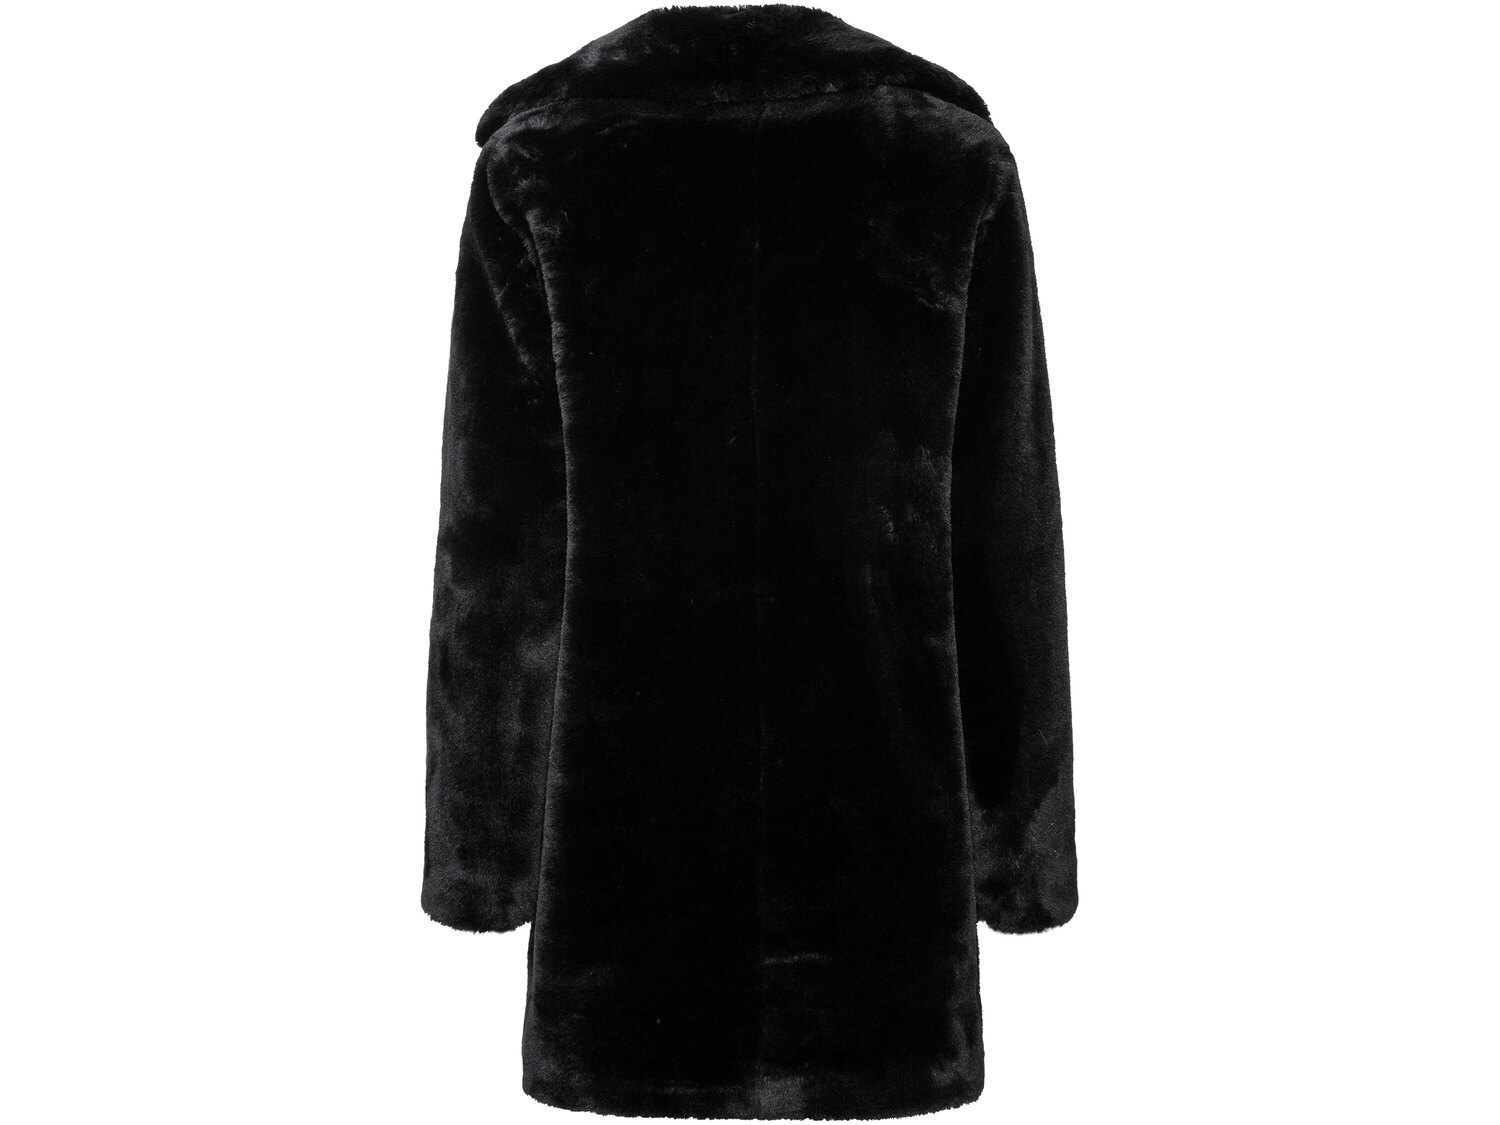 Płaszcz ze sztucznego futra Esmara, cena 99,00 PLN 
- wzór na czasie
- efektowny, ...